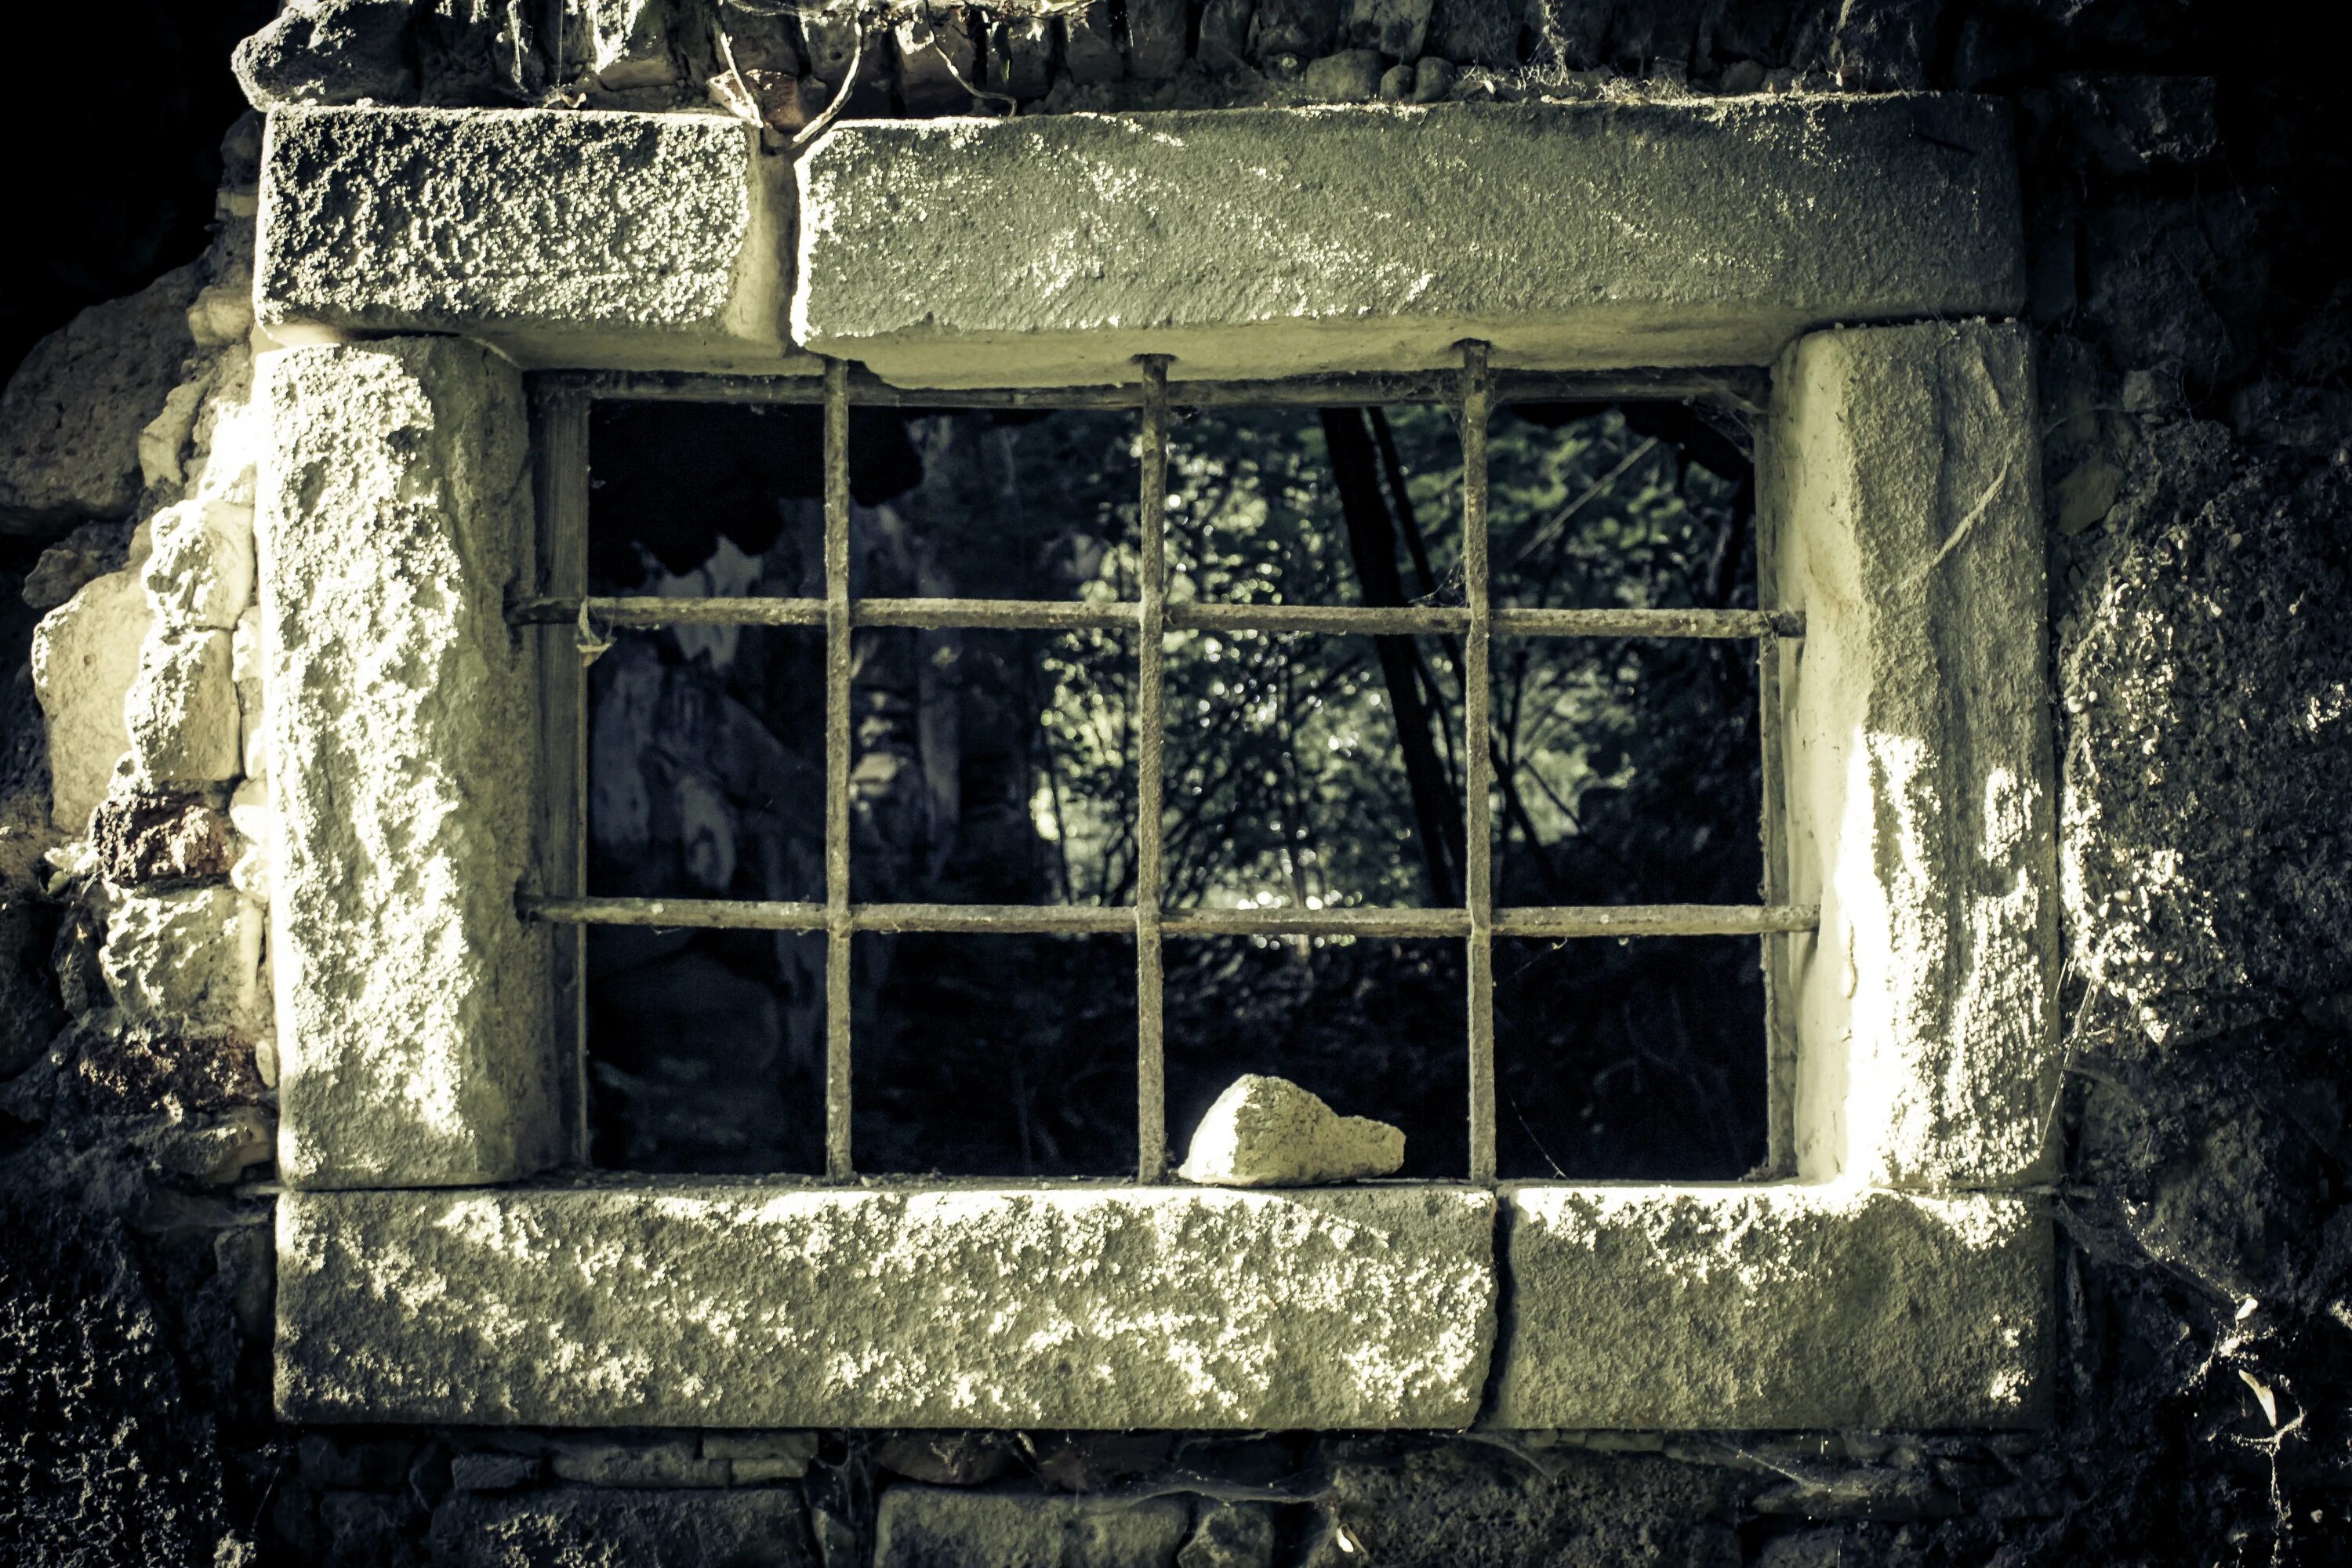 Окно становится черным. Окно в тюрьме. В темнице в окно. Старое окно с решеткой. Тюремное окно с решеткой.